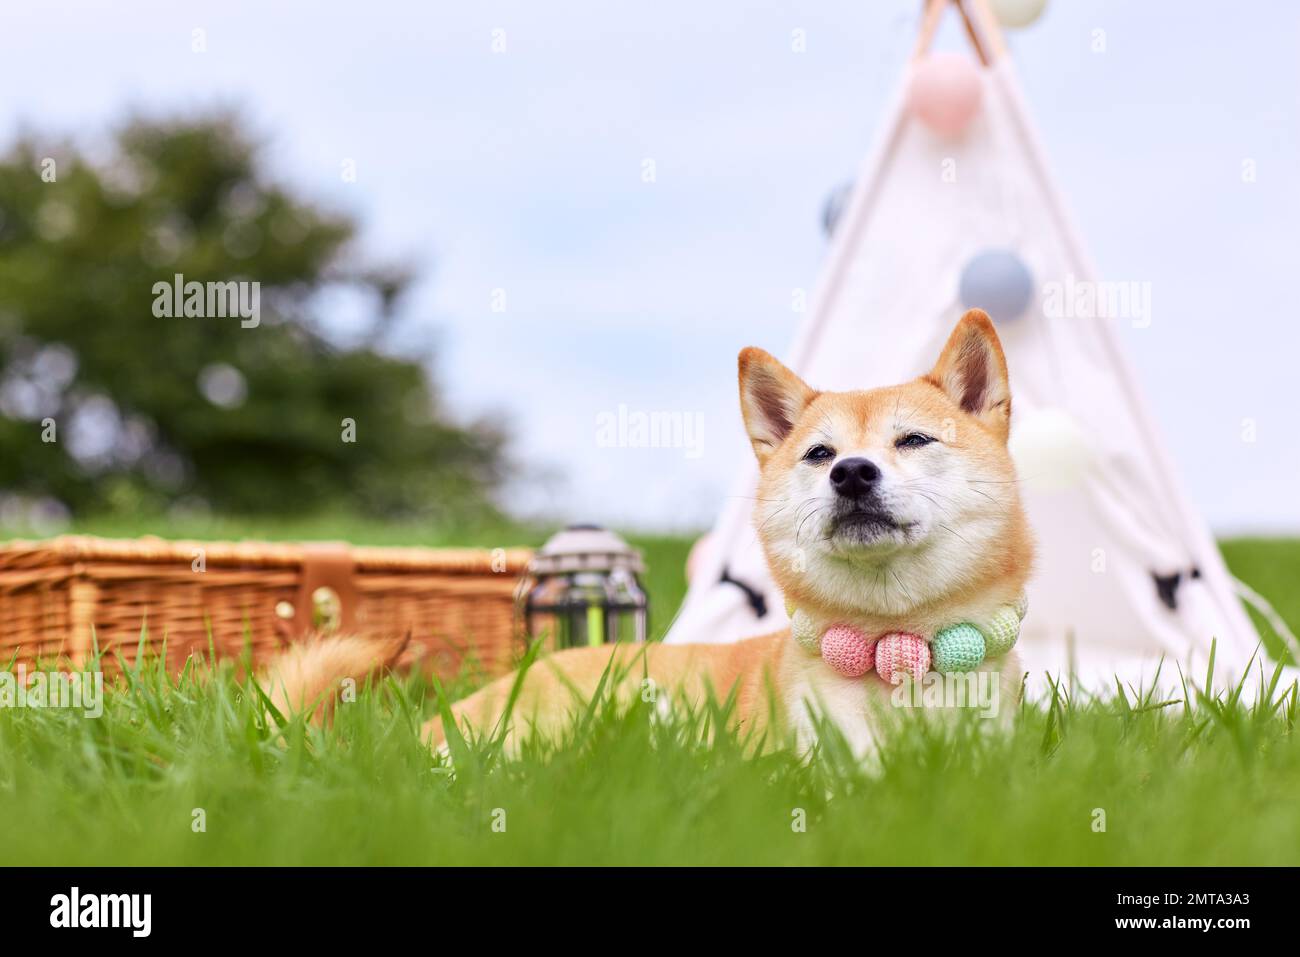 Shiba inu dog on green grass Stock Photo